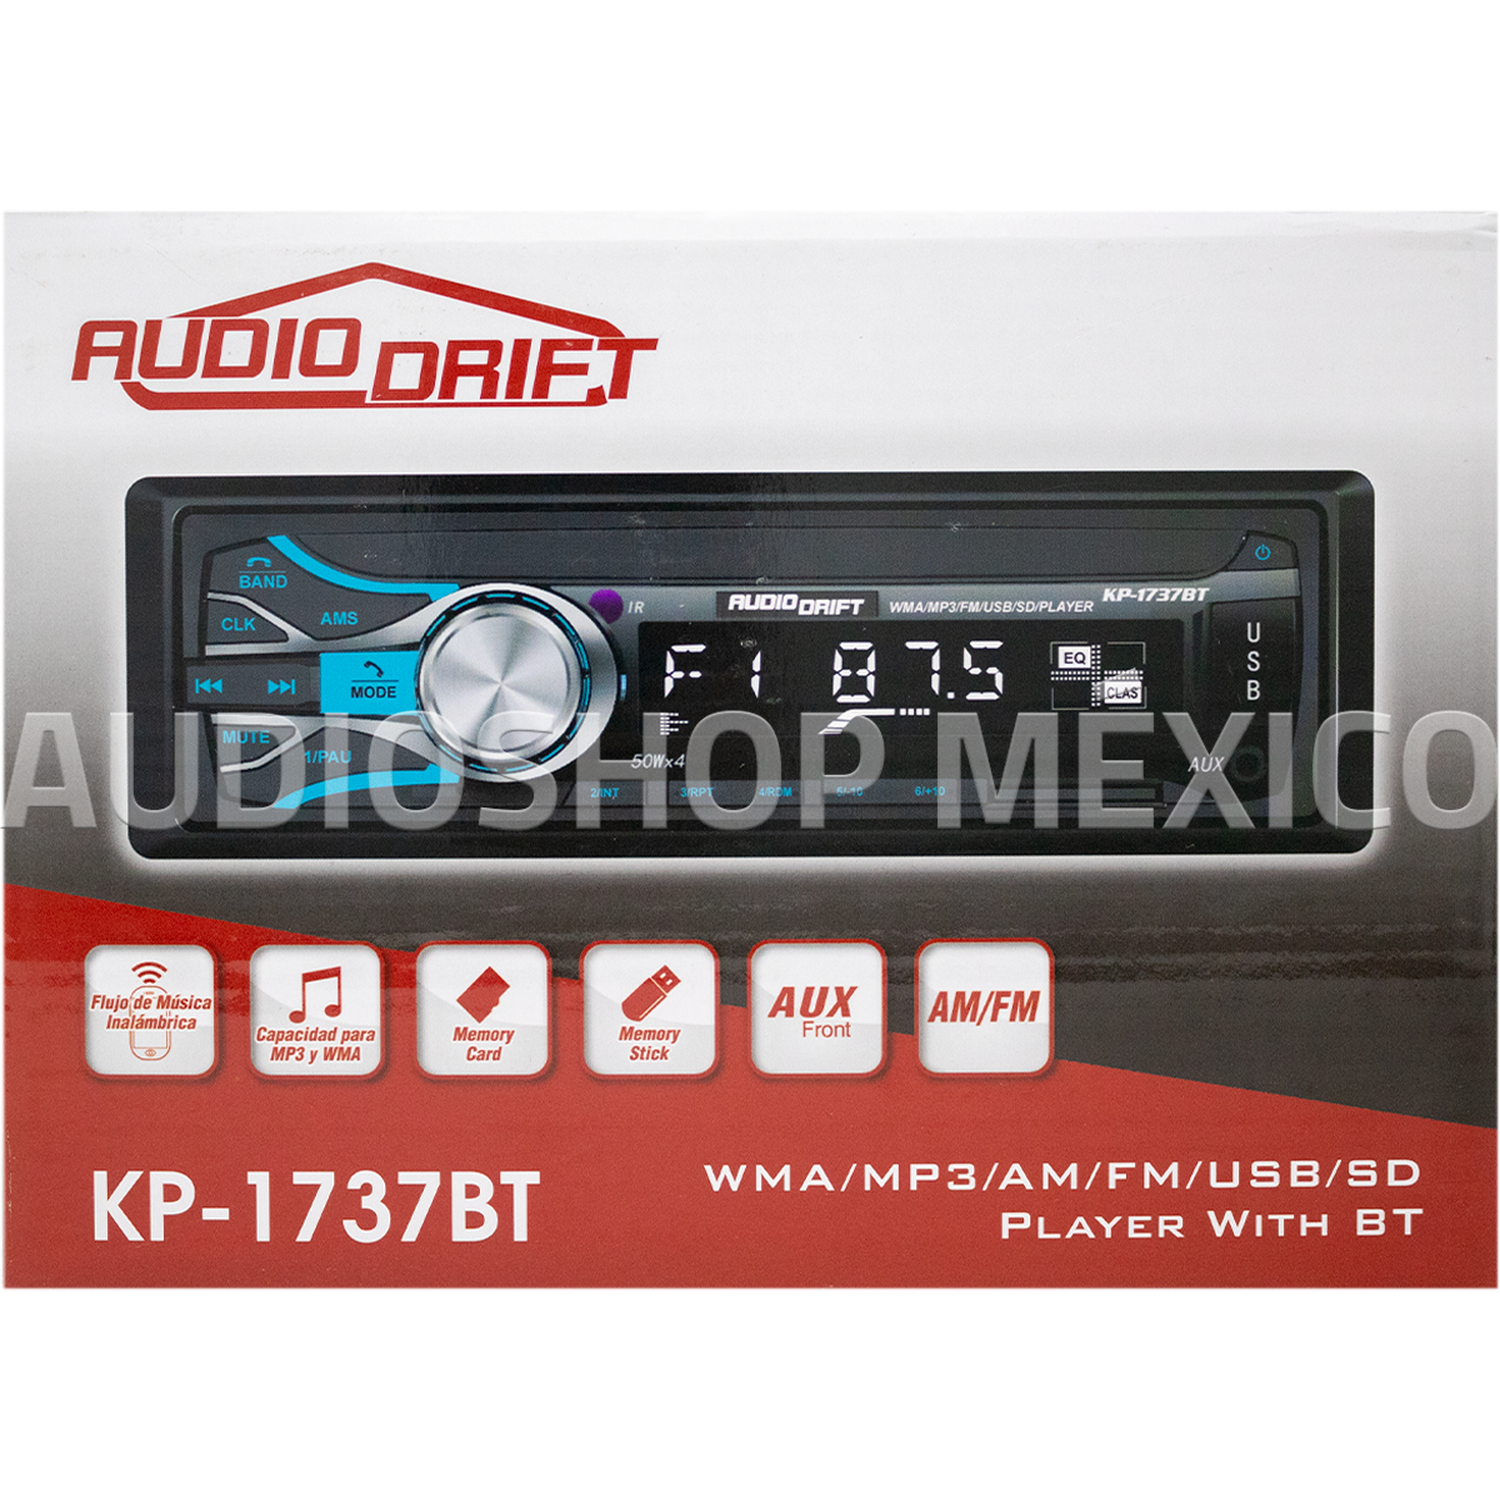 Reproductor Mp3 1 Din Con Bluetooth Y Auxiliar Para Auto